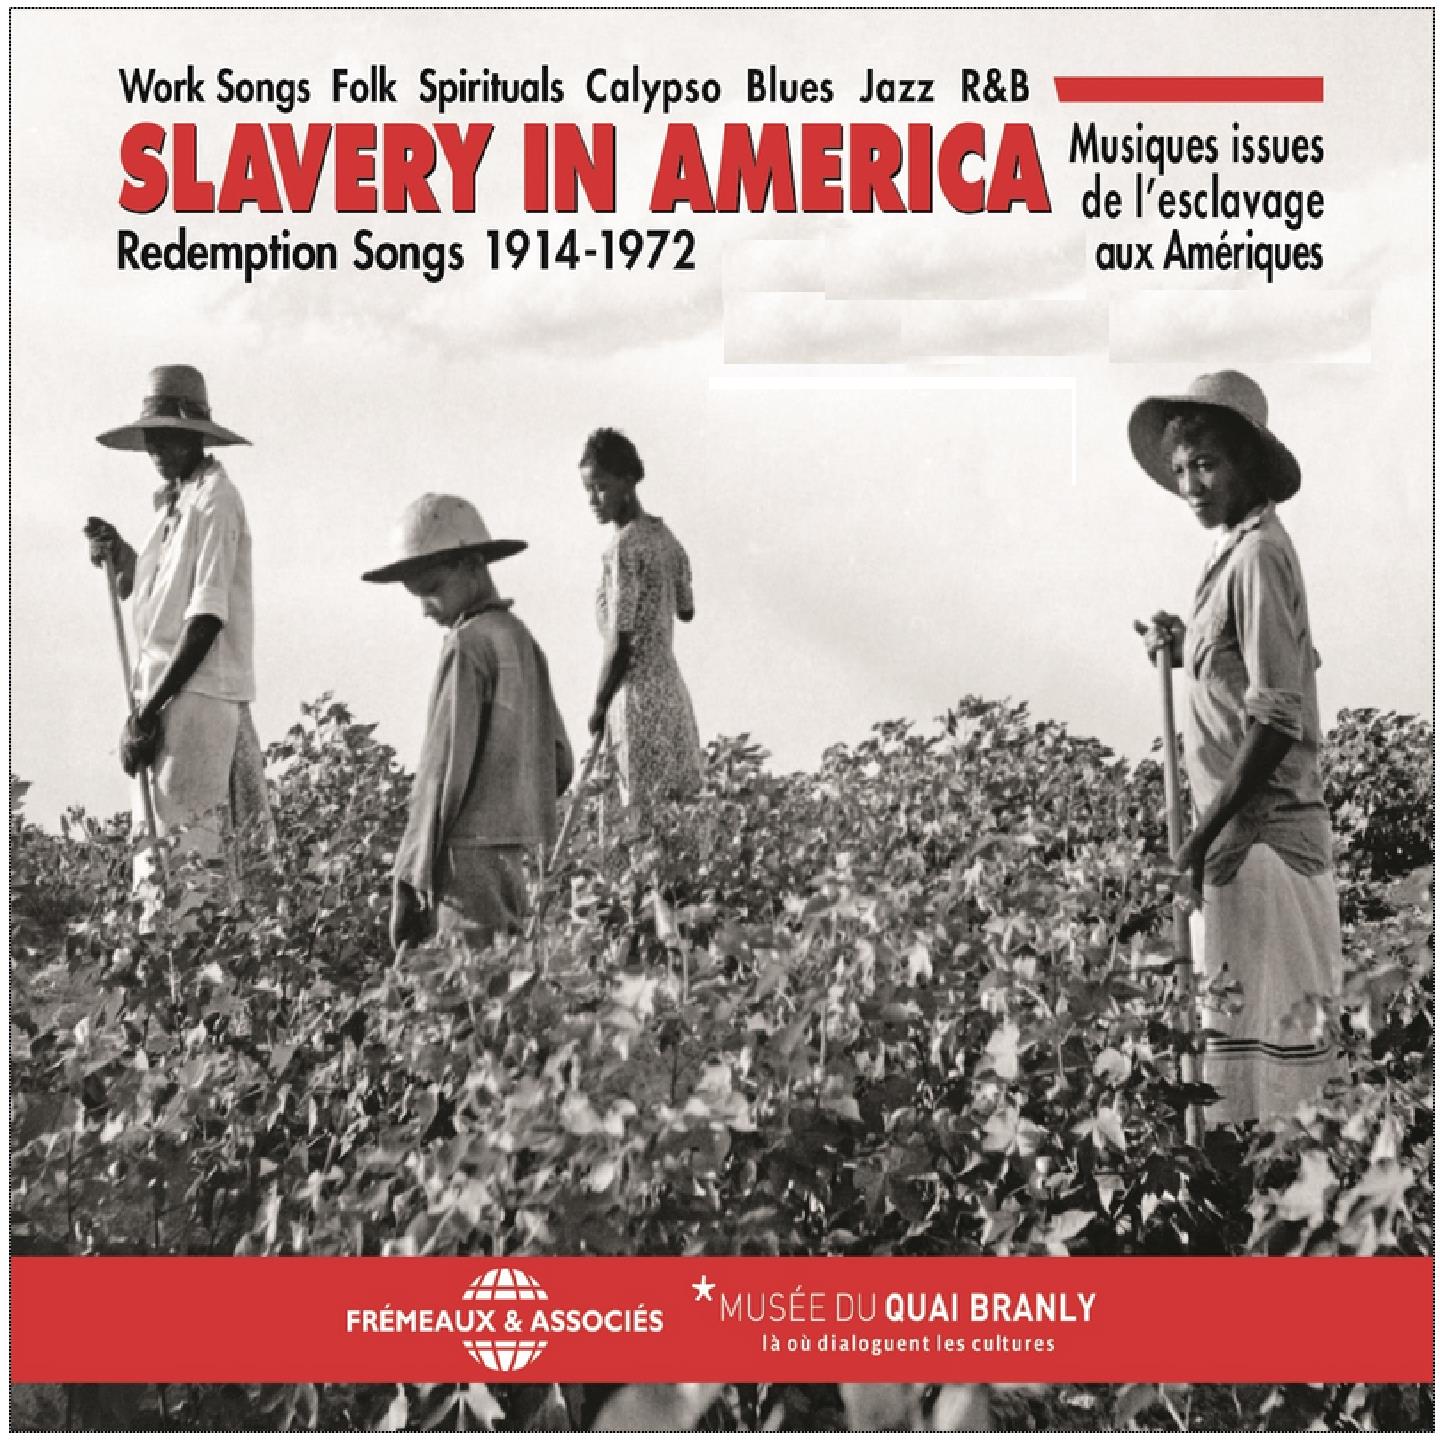 Slavery in America  Redemption Songs 19141972 Musiques issues de l' esclavage aux Ame riques